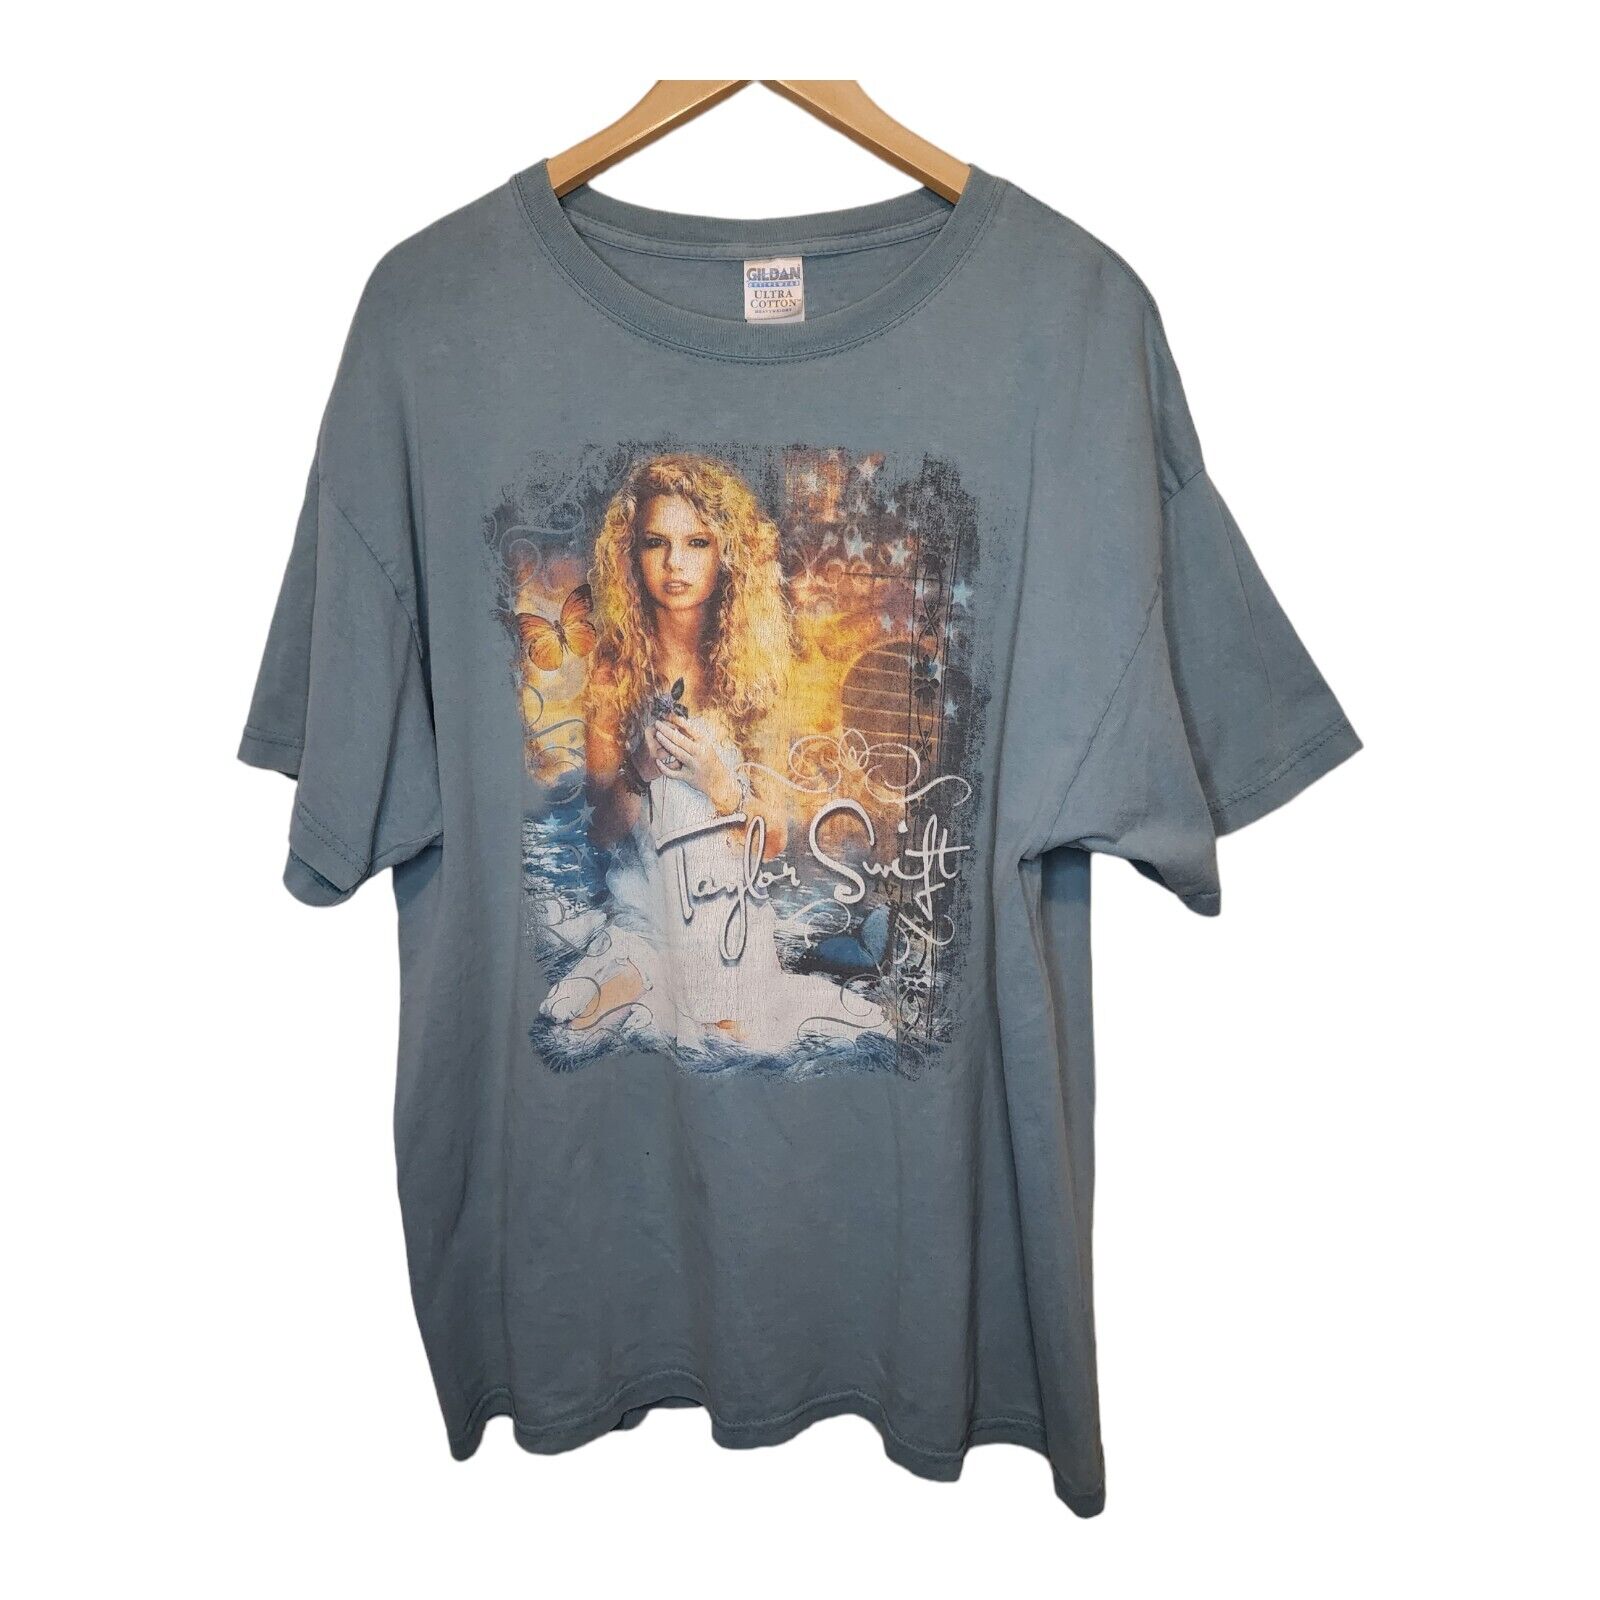 Vintage Taylor Swift Shirt Debut Album 2007 Rare Size XL Size 1st Tour Original